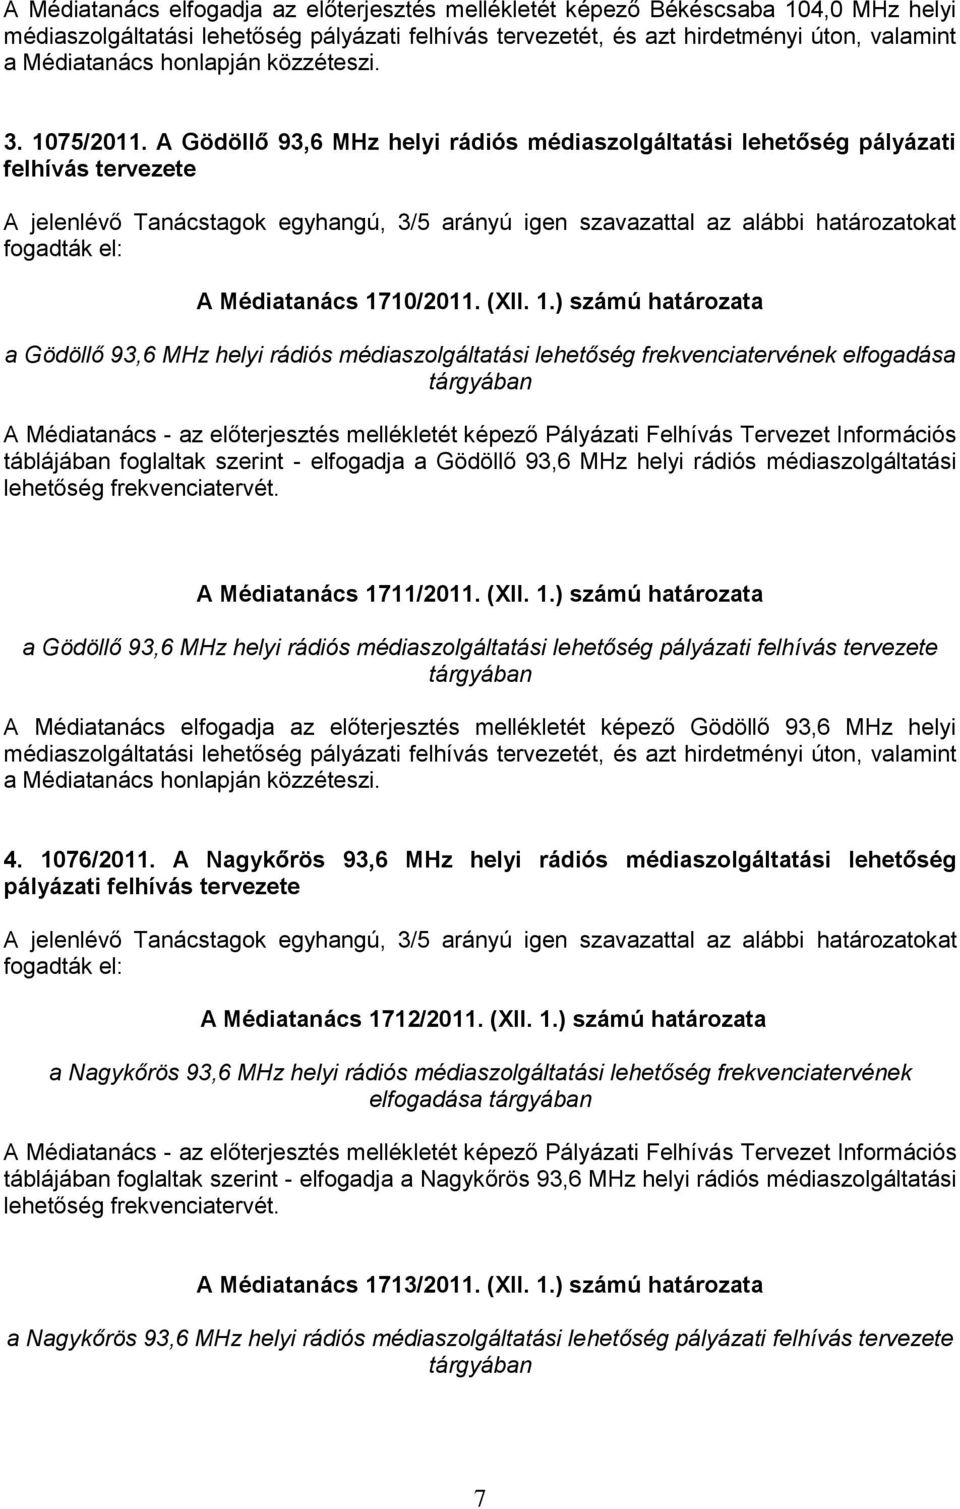 A Gödöllő 93,6 MHz helyi rádiós médiaszolgáltatási lehetőség pályázati felhívás tervezete A jelenlévő Tanácstagok egyhangú, 3/5 arányú igen szavazattal az alábbi határozatokat A Médiatanács 1710/2011.